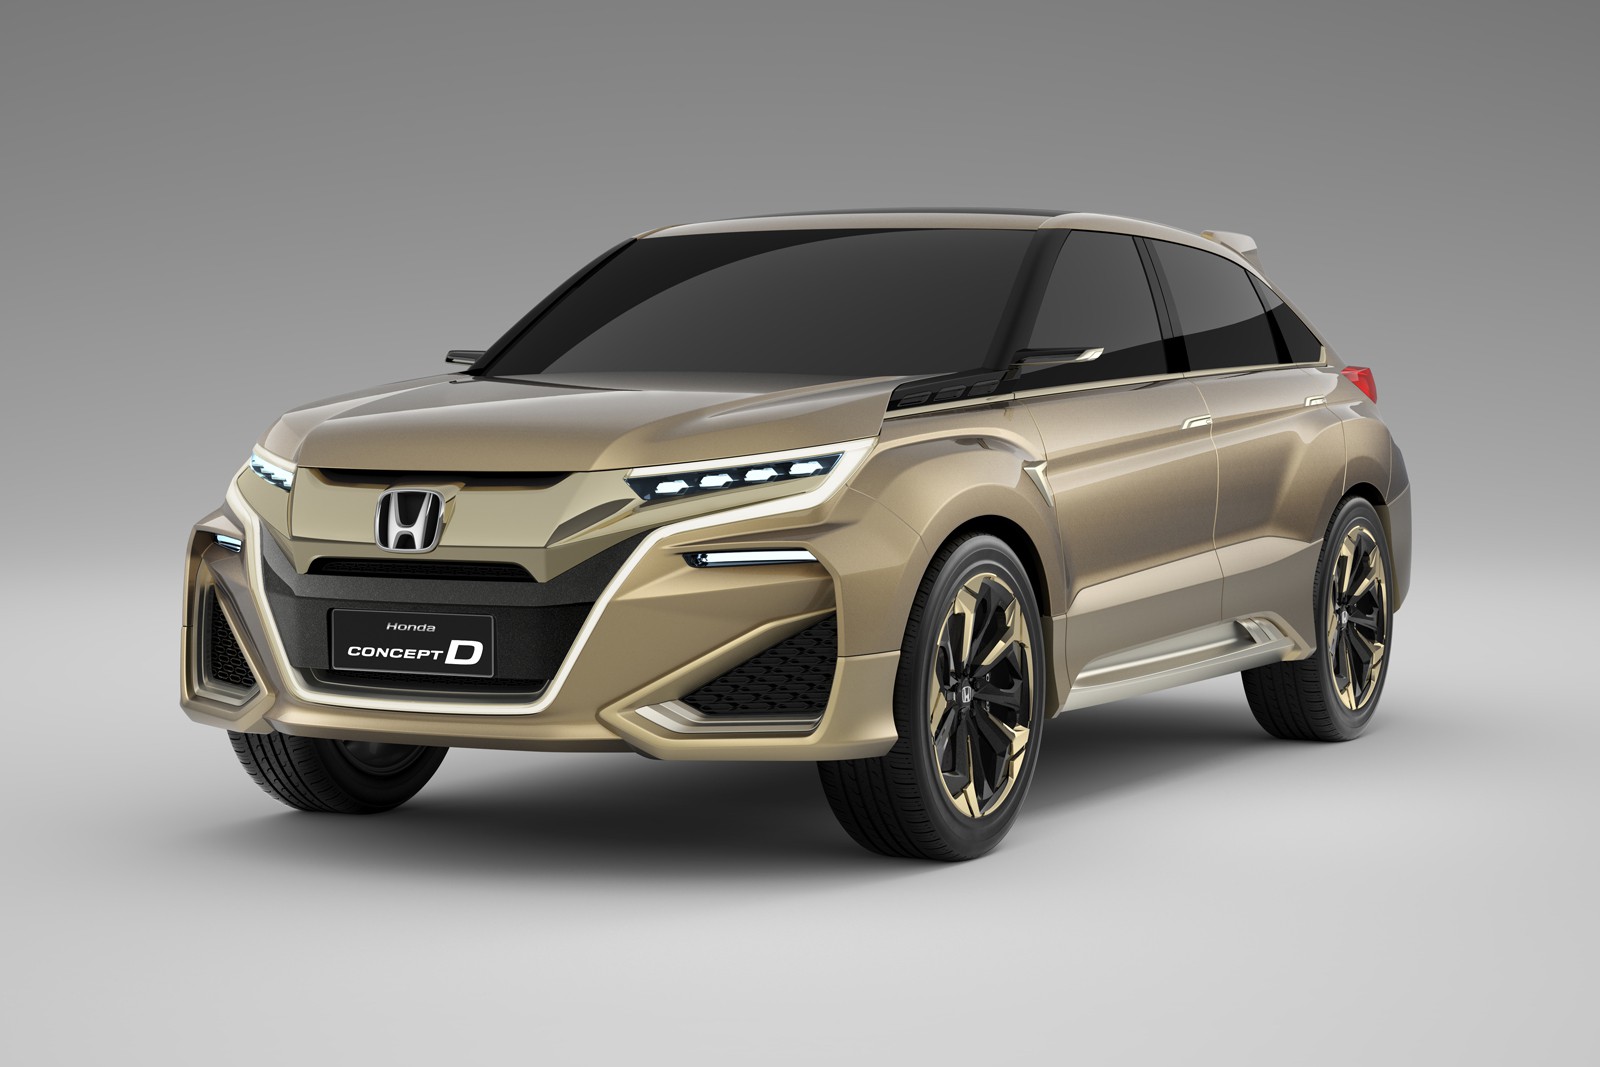 El Honda Concept D se presentará en el Salón de Shanghái 2015